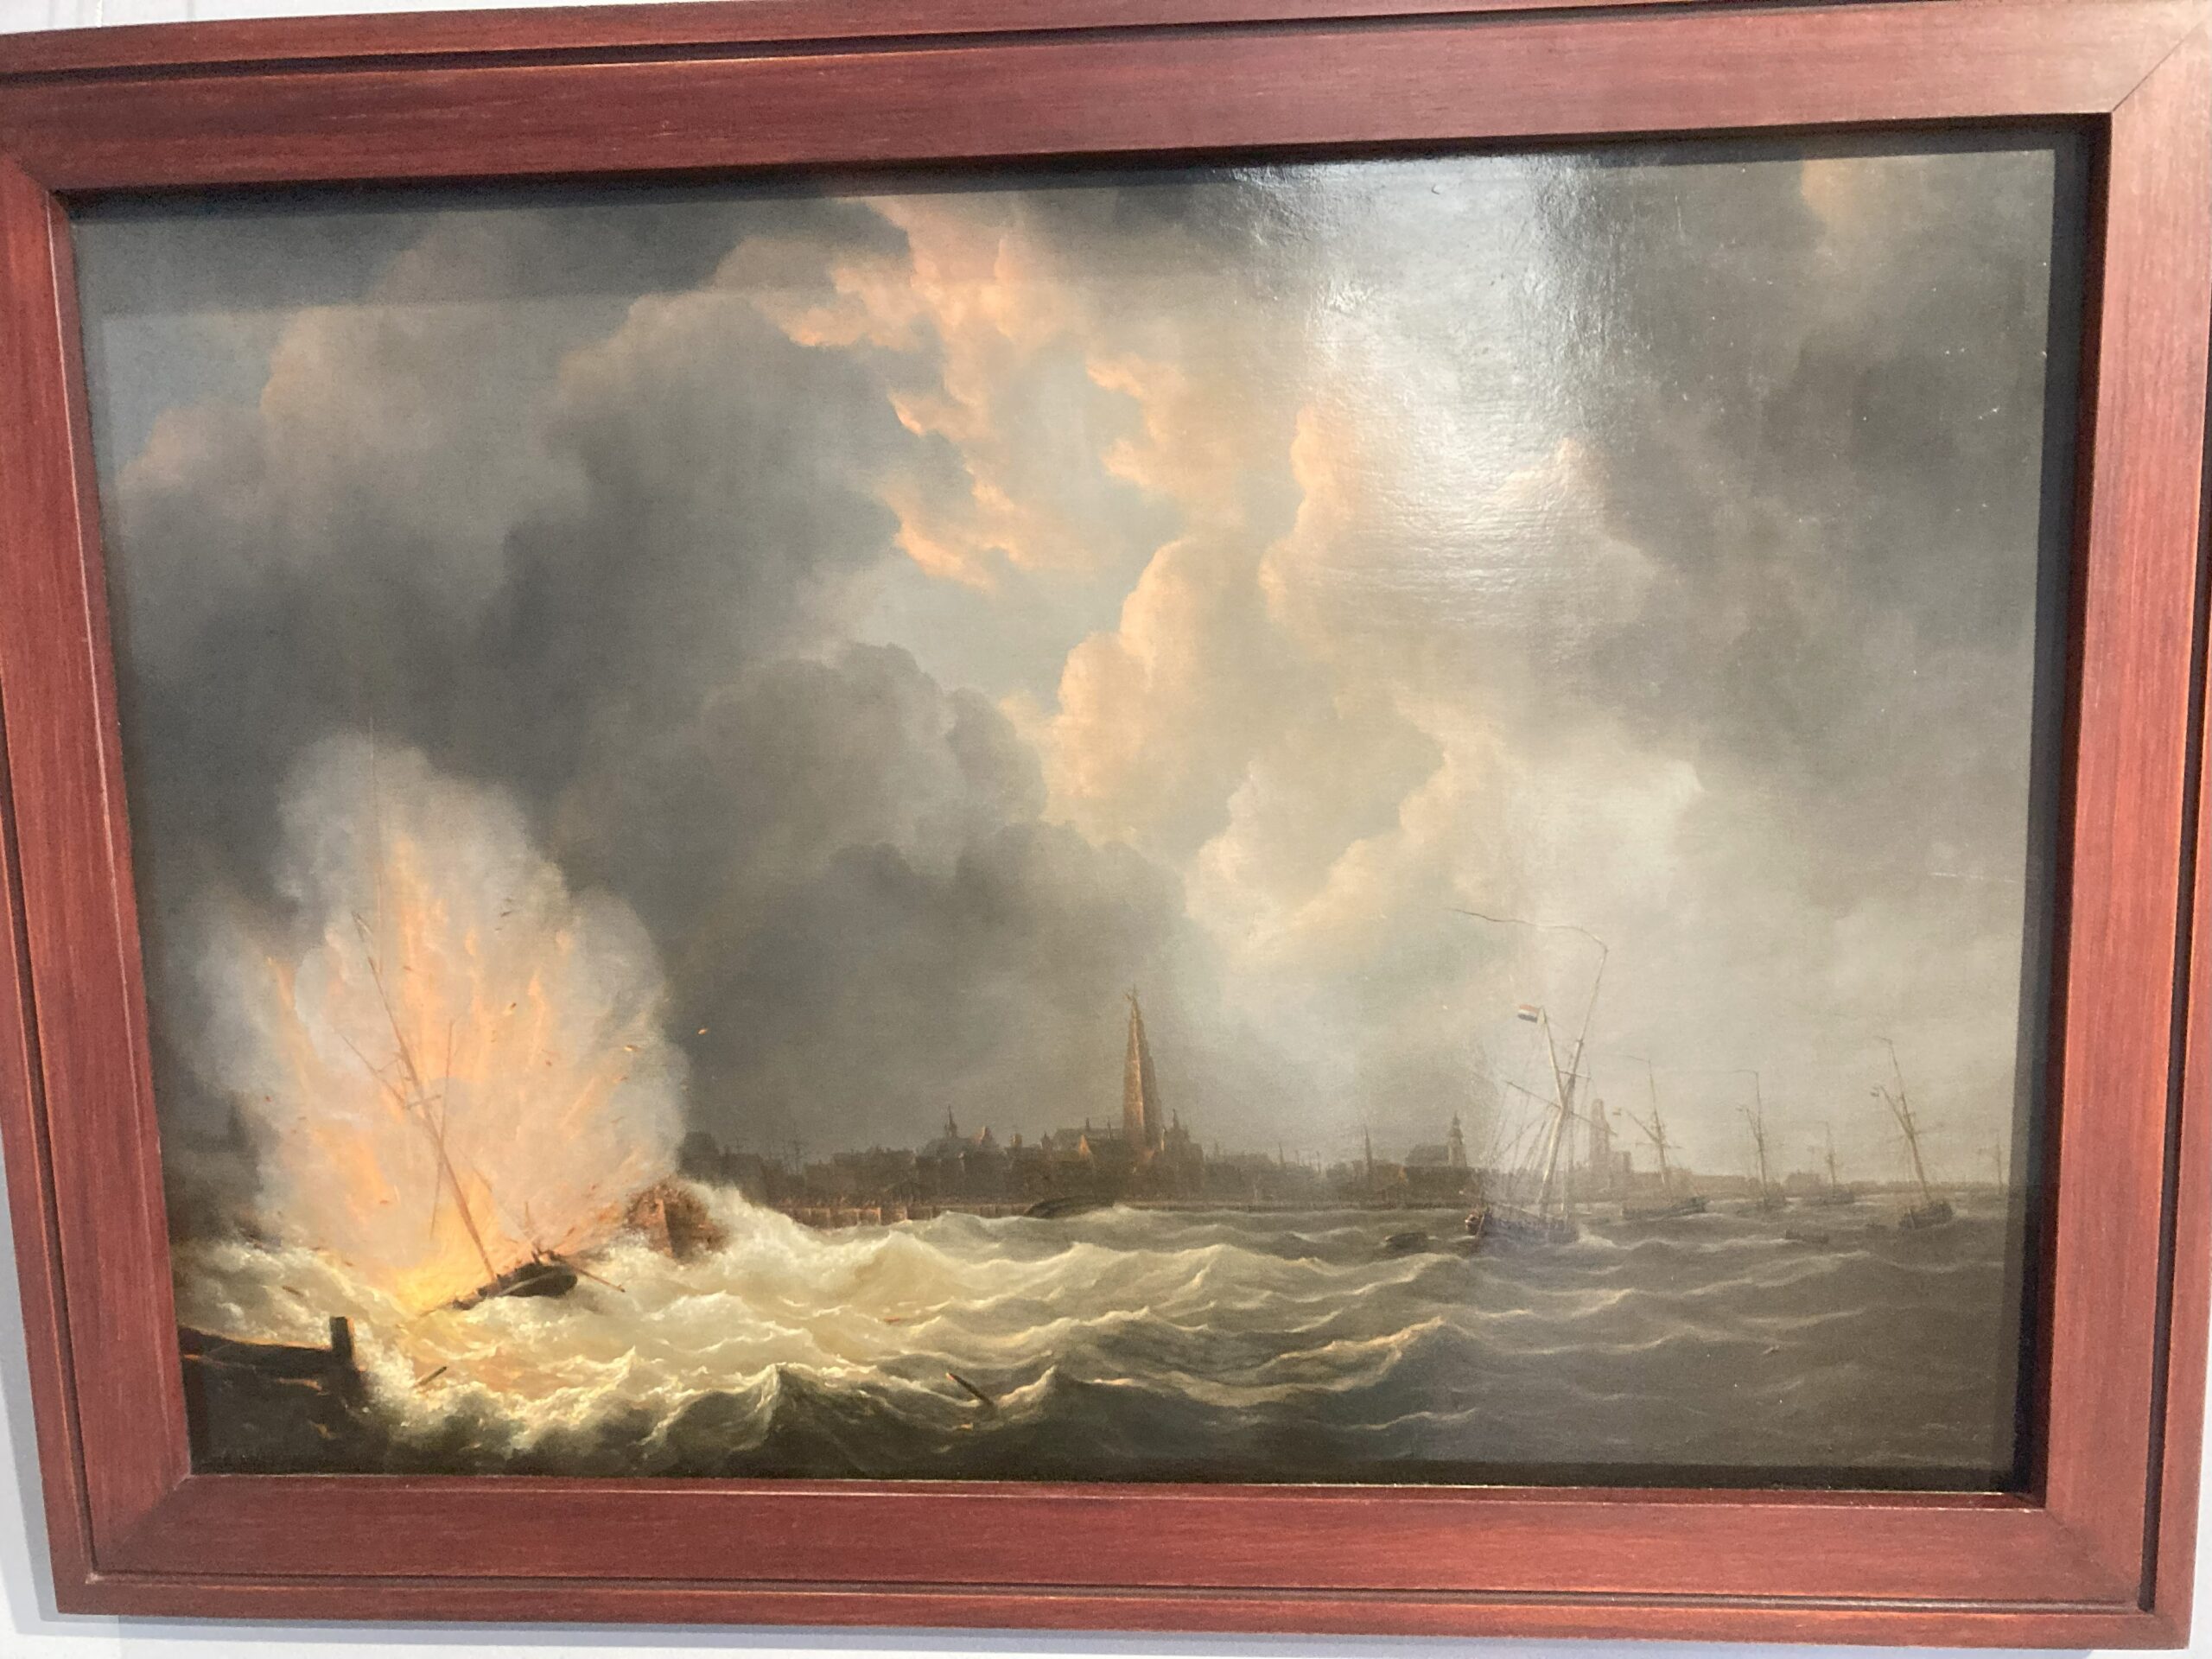 schilderij blokkersdijk ontploffing tachtigjarige oorlog hete vuren